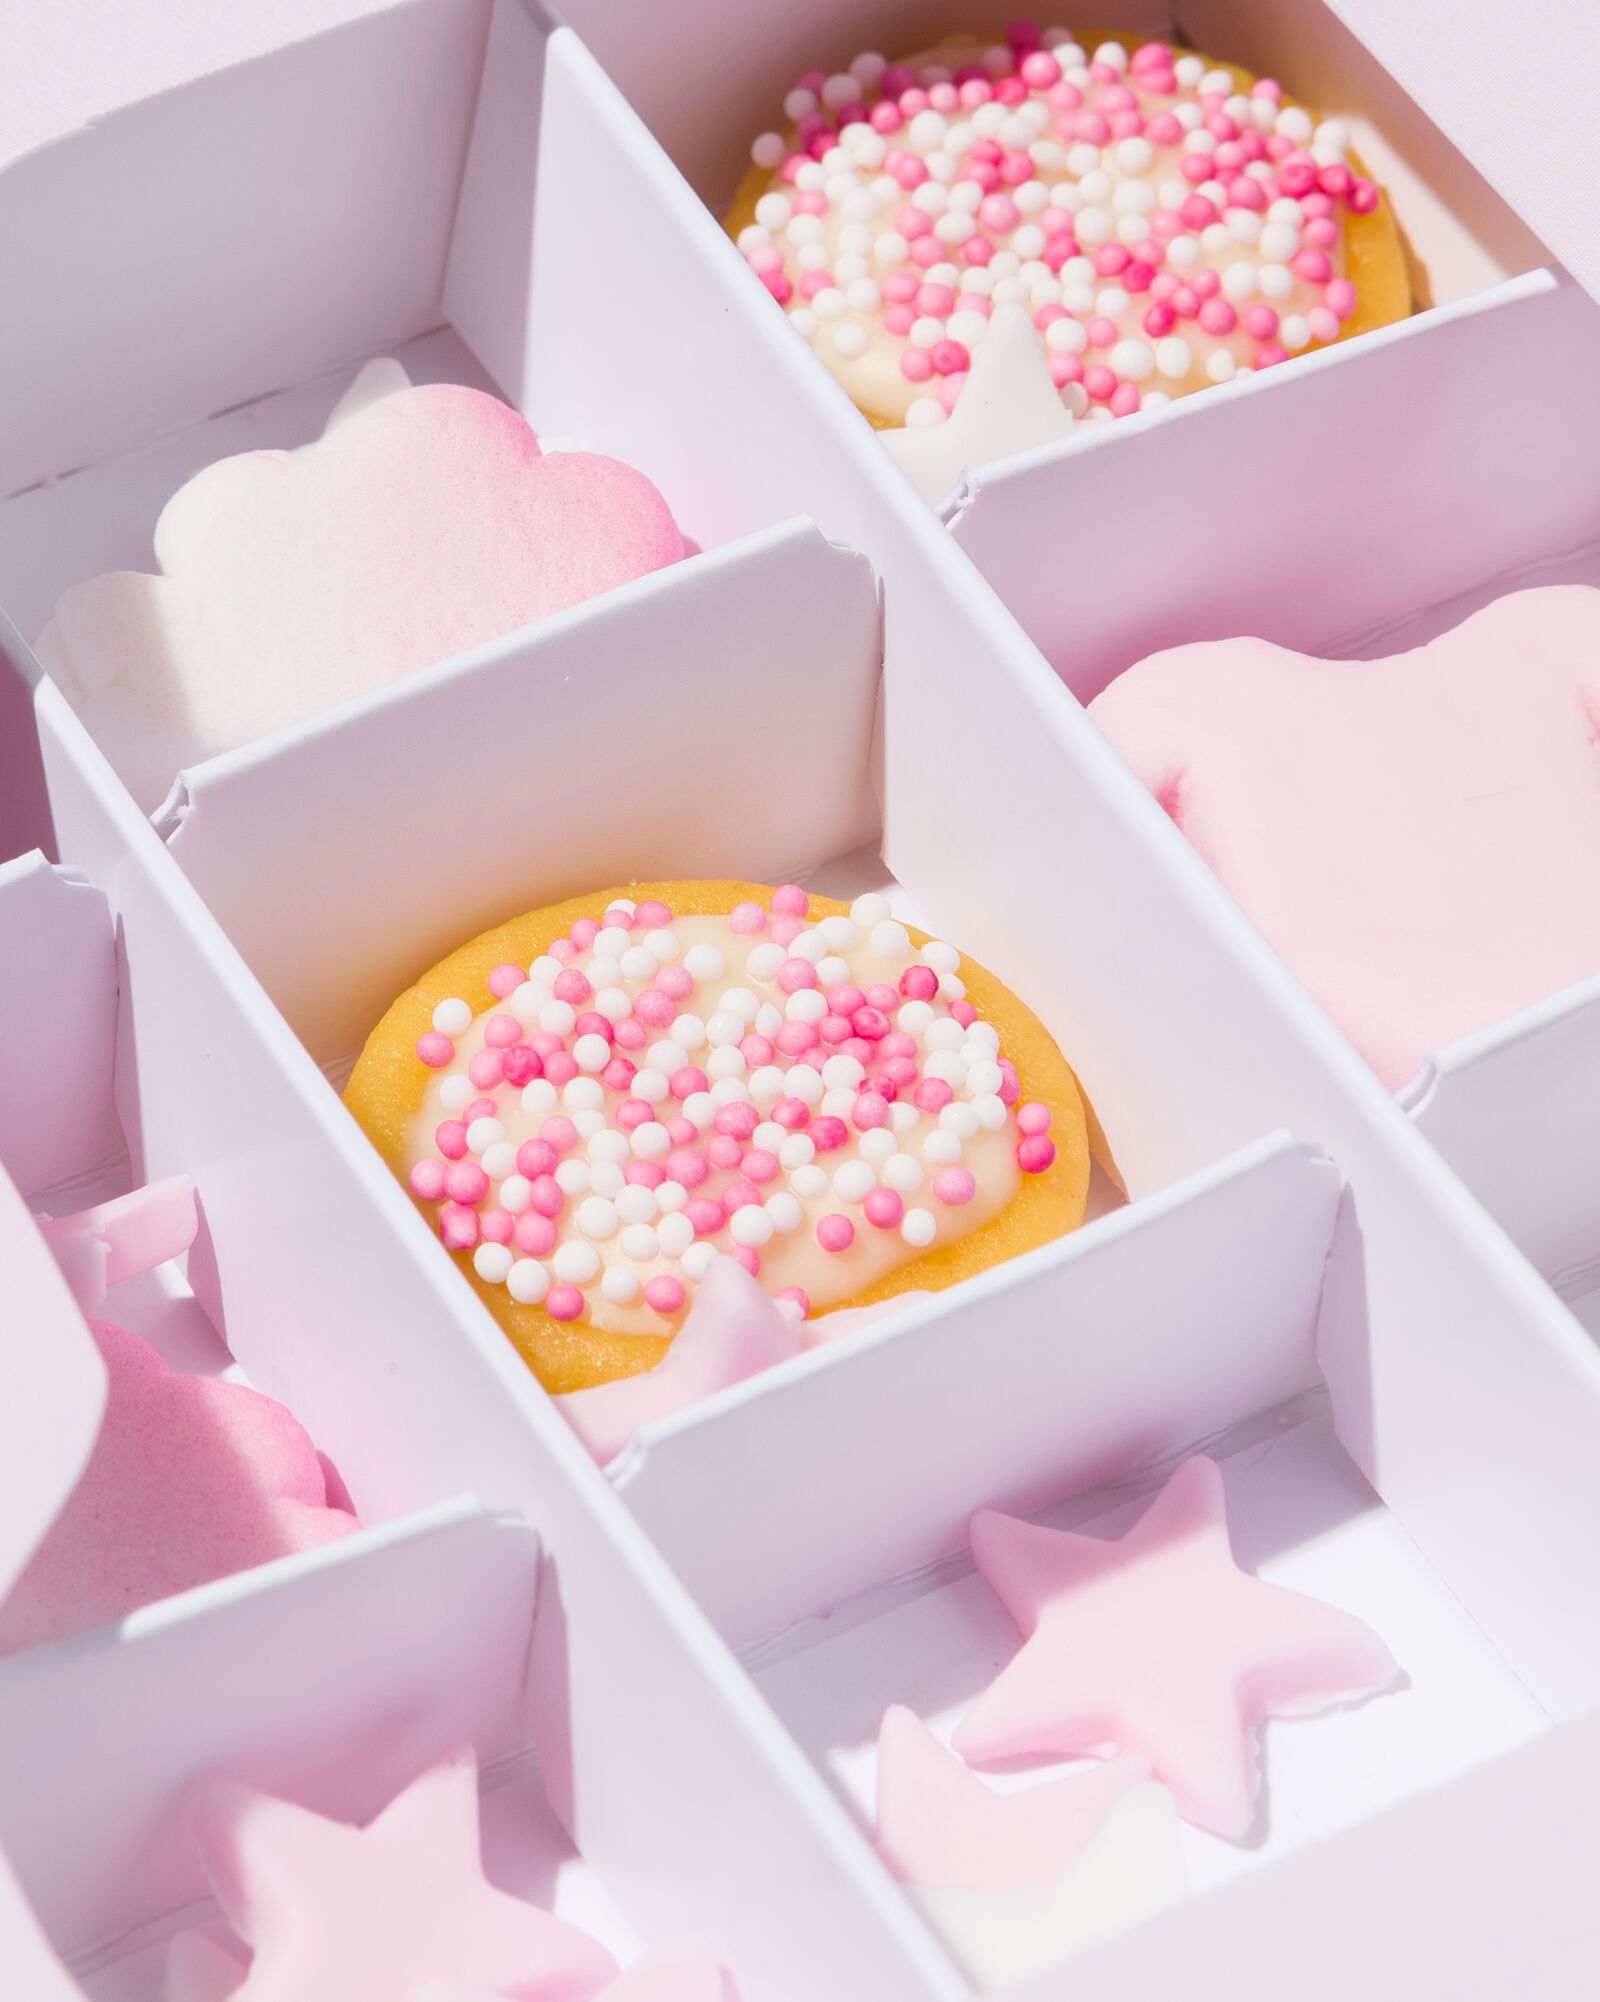 décoration pour gâteau comestible - fête bébé rose - HEMA